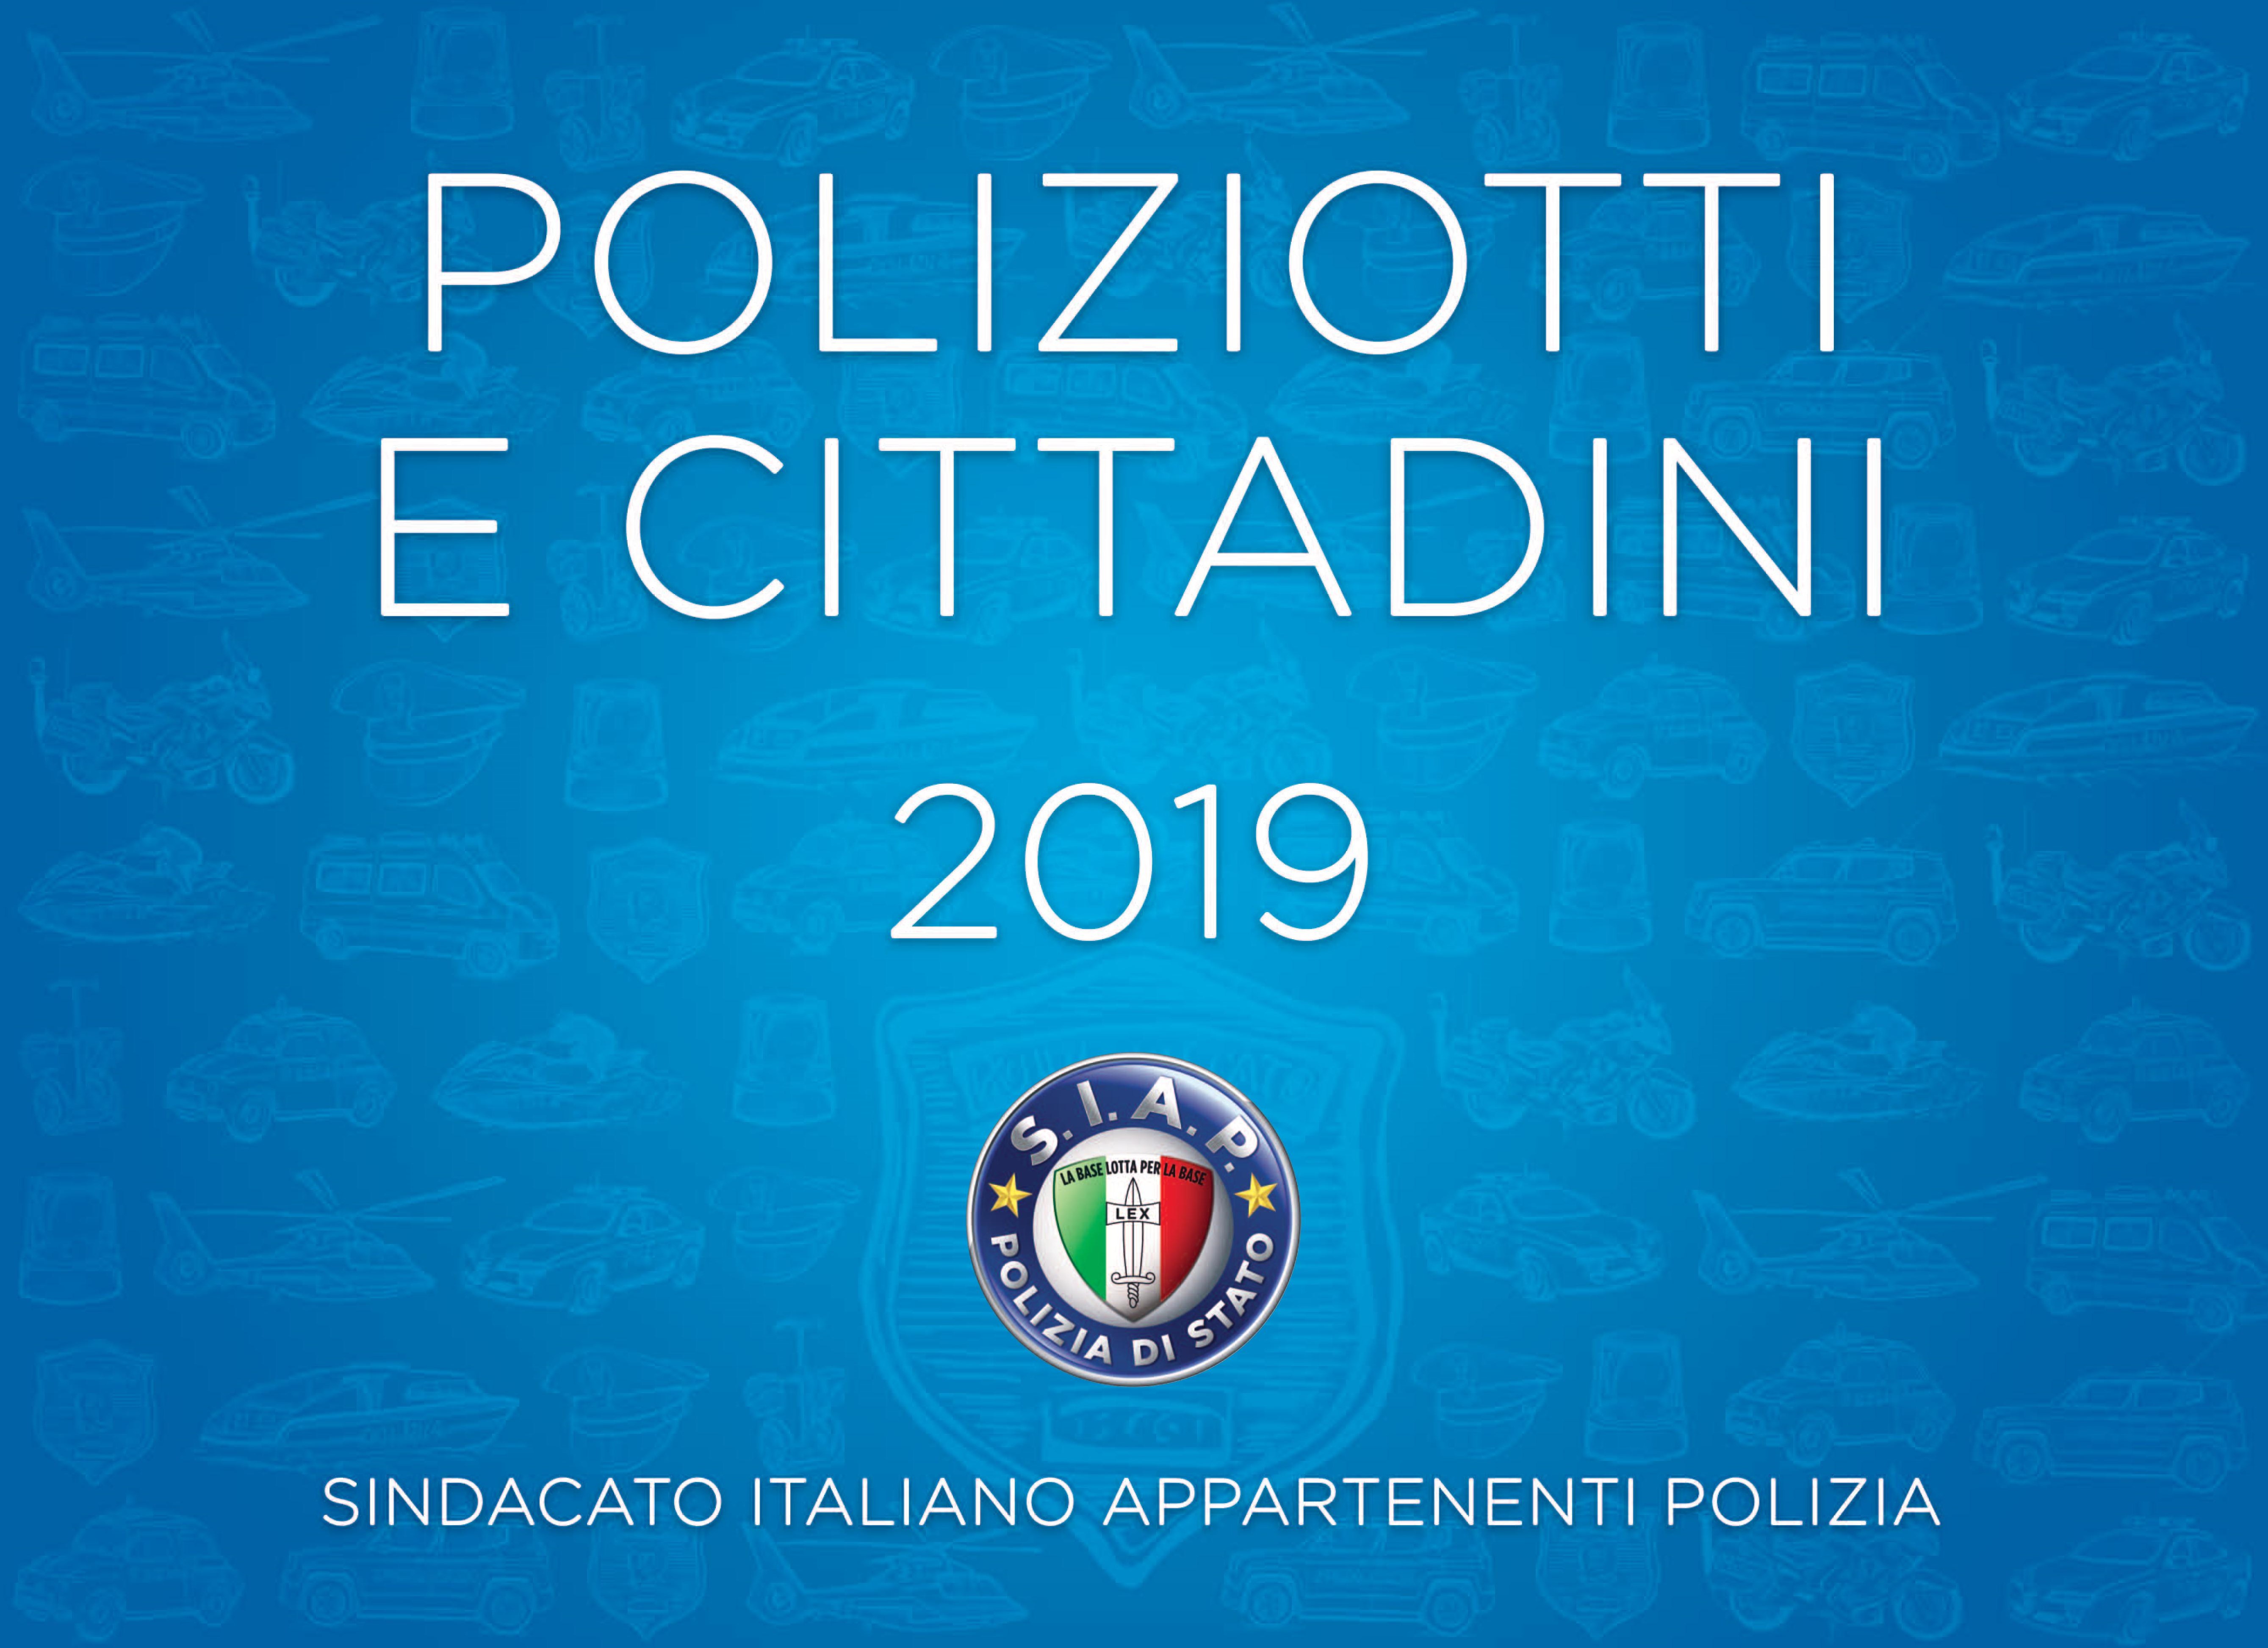 CALENDARIO 2019 - POLIZIOTTI E CITTADINI 